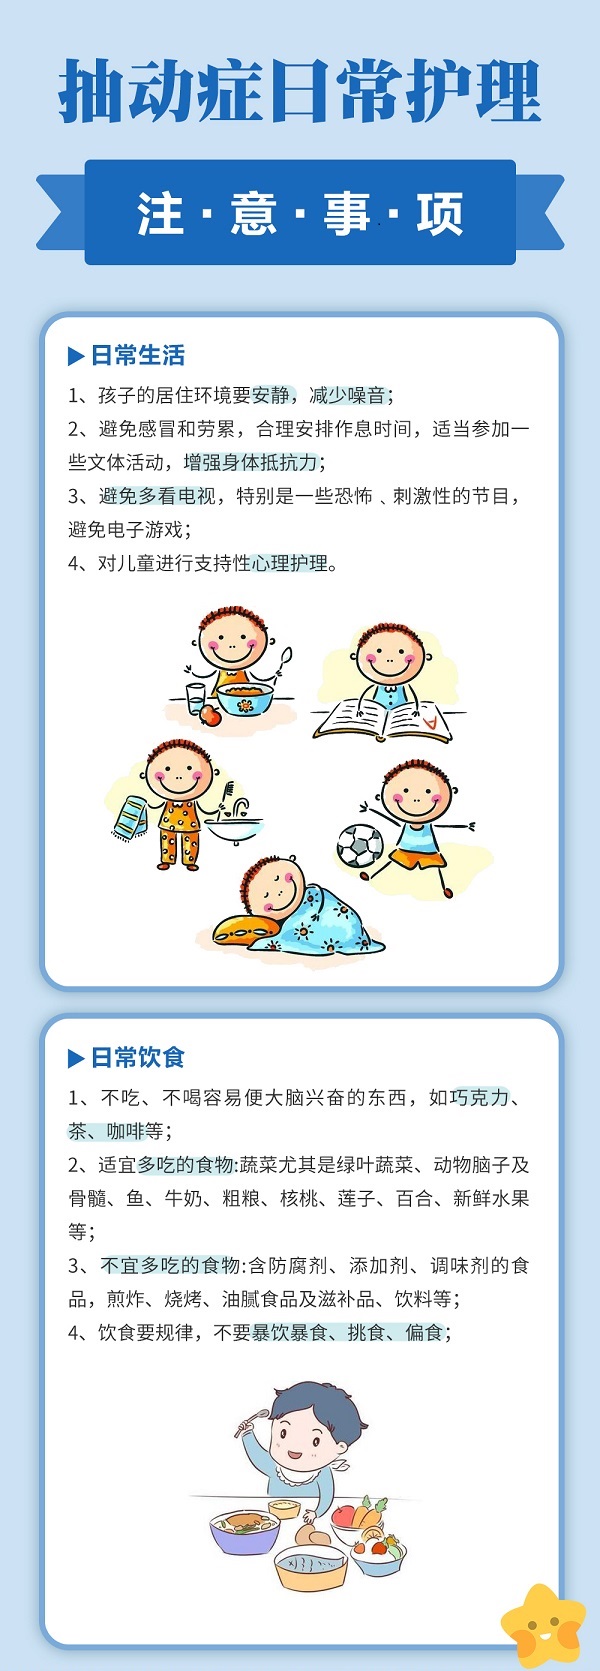 西安中童儿童康复医院是专为儿童、青少年治疗抽动症等疑难病症的儿童专科医院